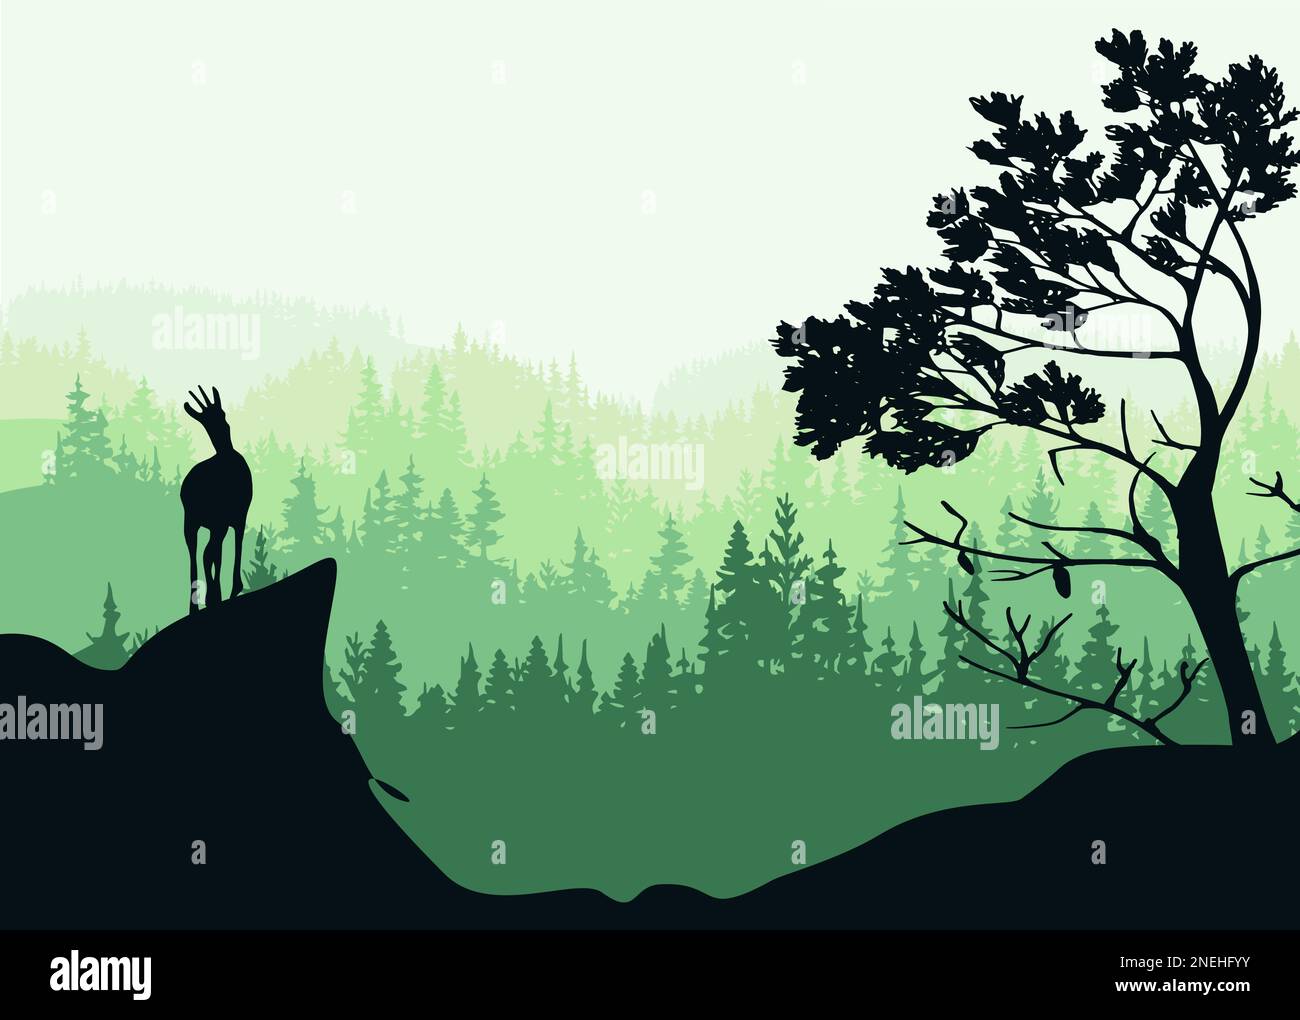 Ein Chamois steht auf einem Hügel mit Bergen und Wald im Hintergrund. Kiefer im Vordergrund. Magische nebelige Landschaft. Naturillustrierung. Stock Vektor